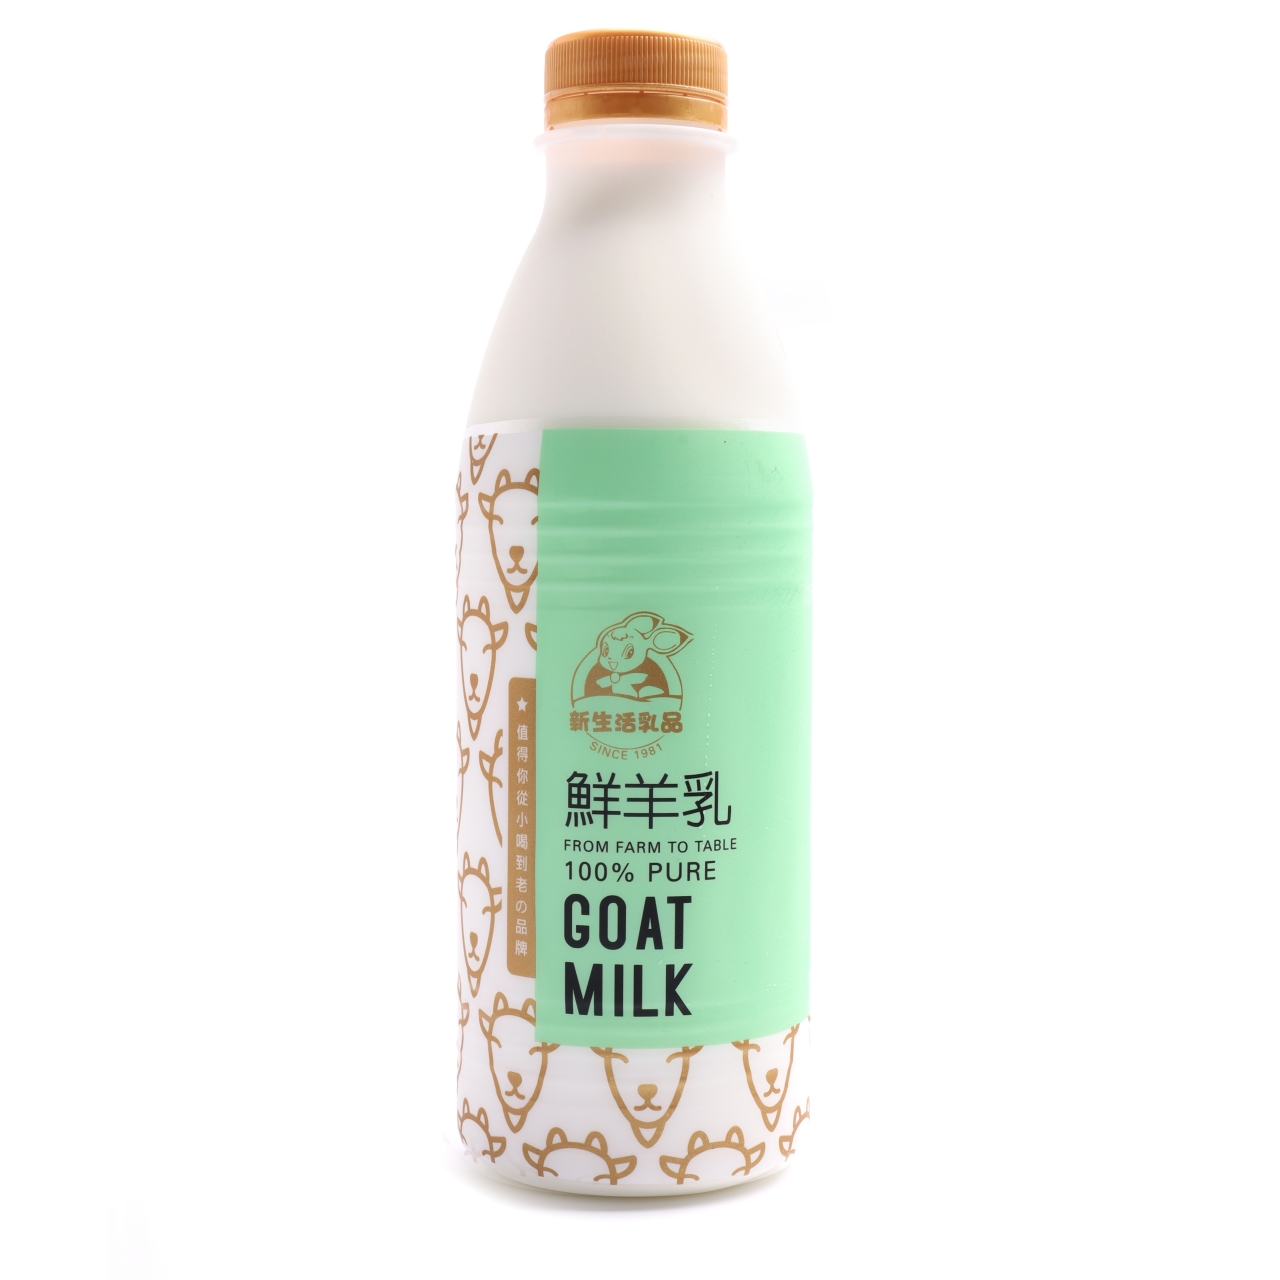 鮮羊奶(936ml)－全國超市銷售NO.1